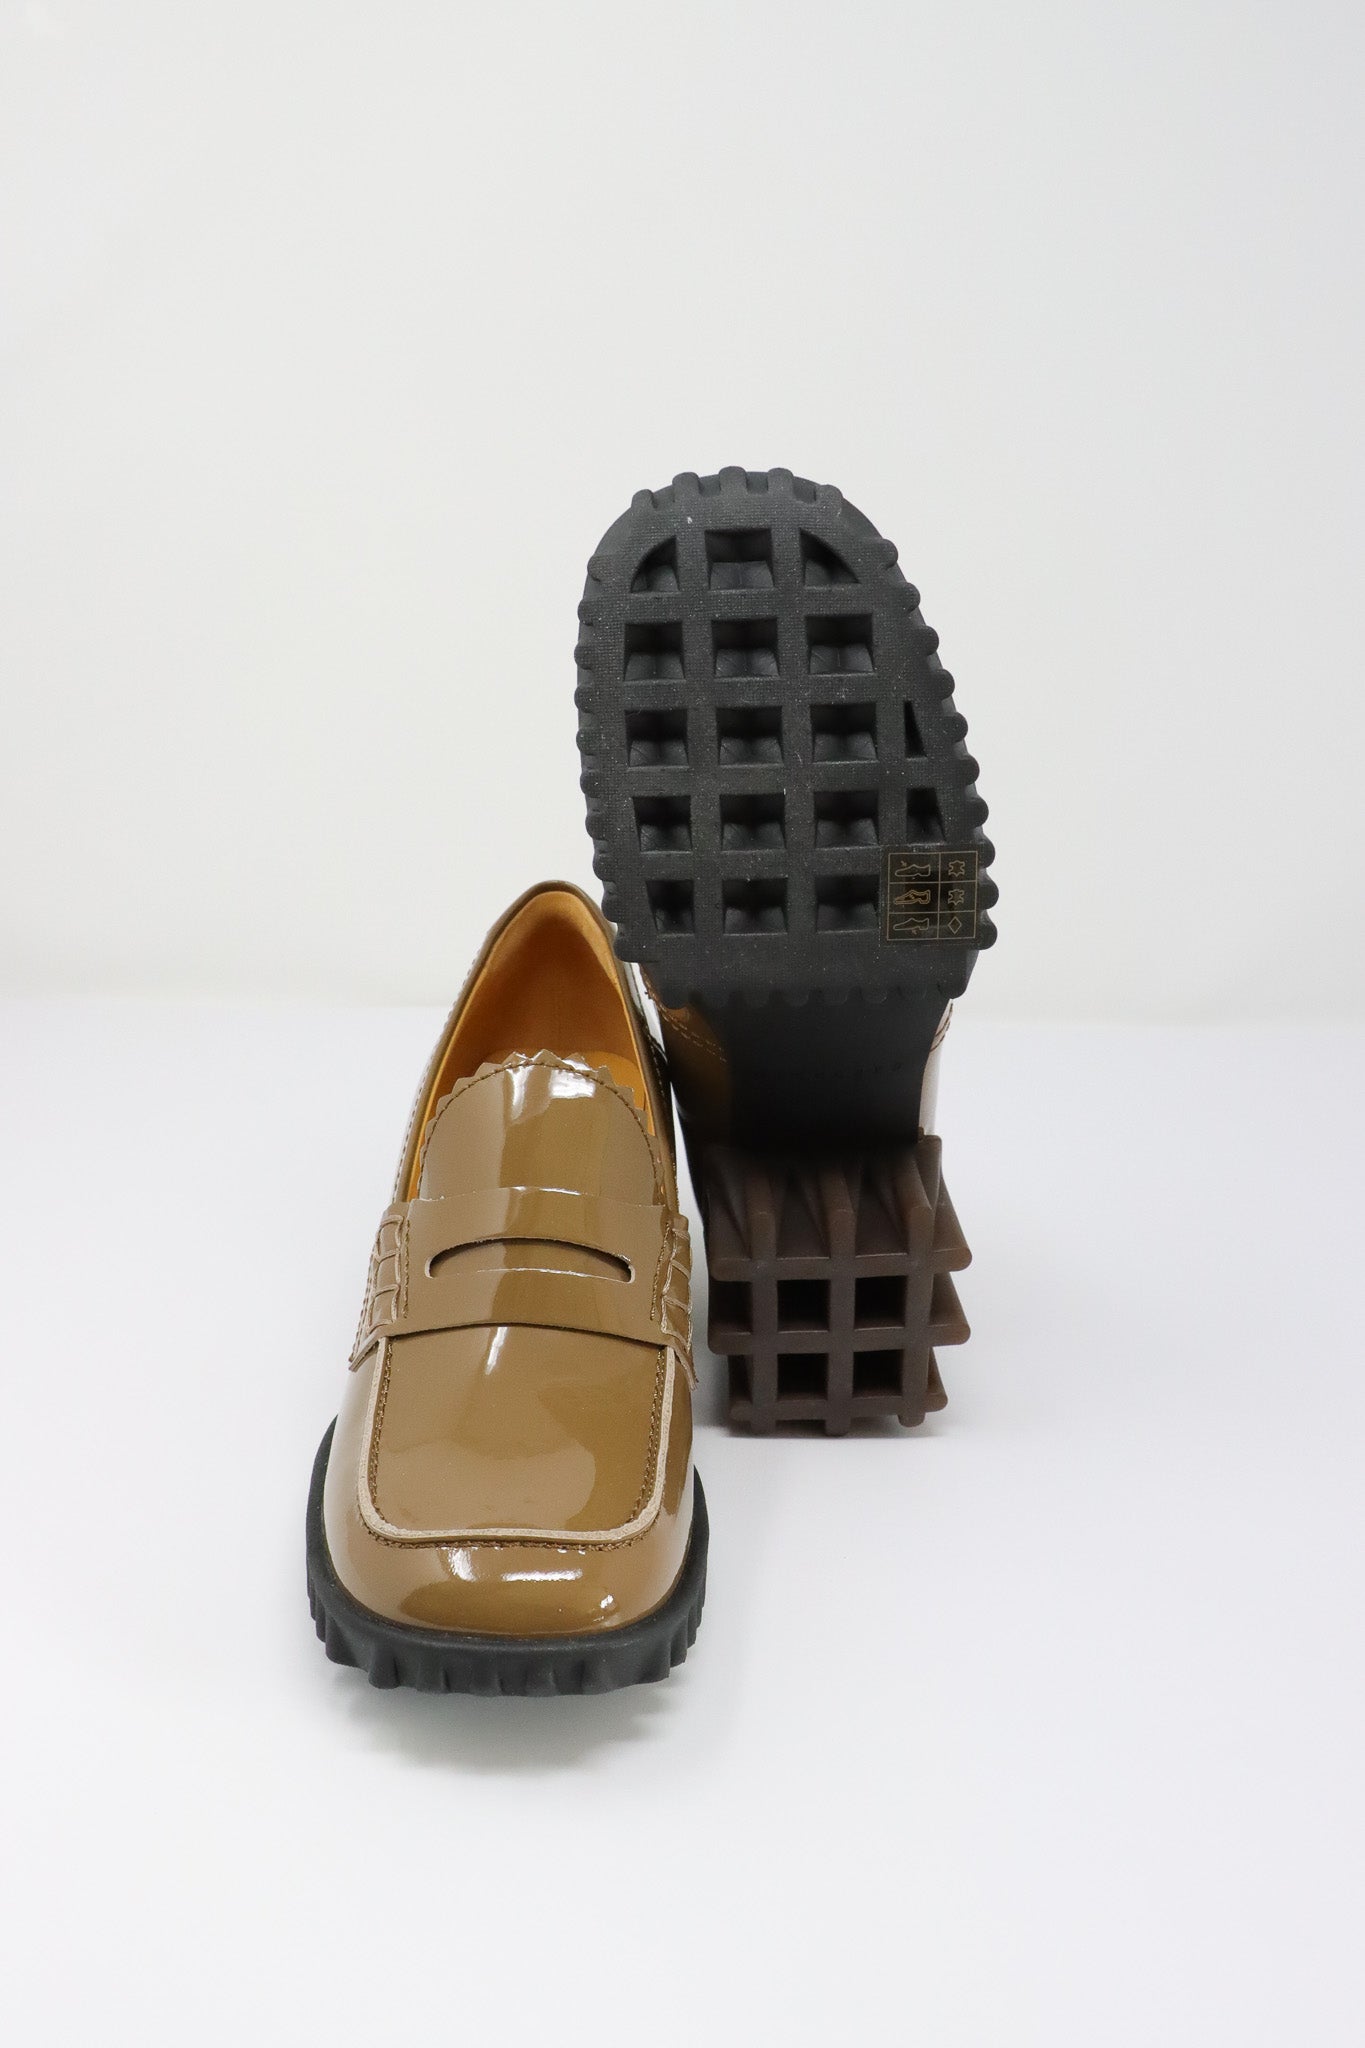 Penny ATELIER957 Shoes Khaki 4CCCCEES – Bloffo